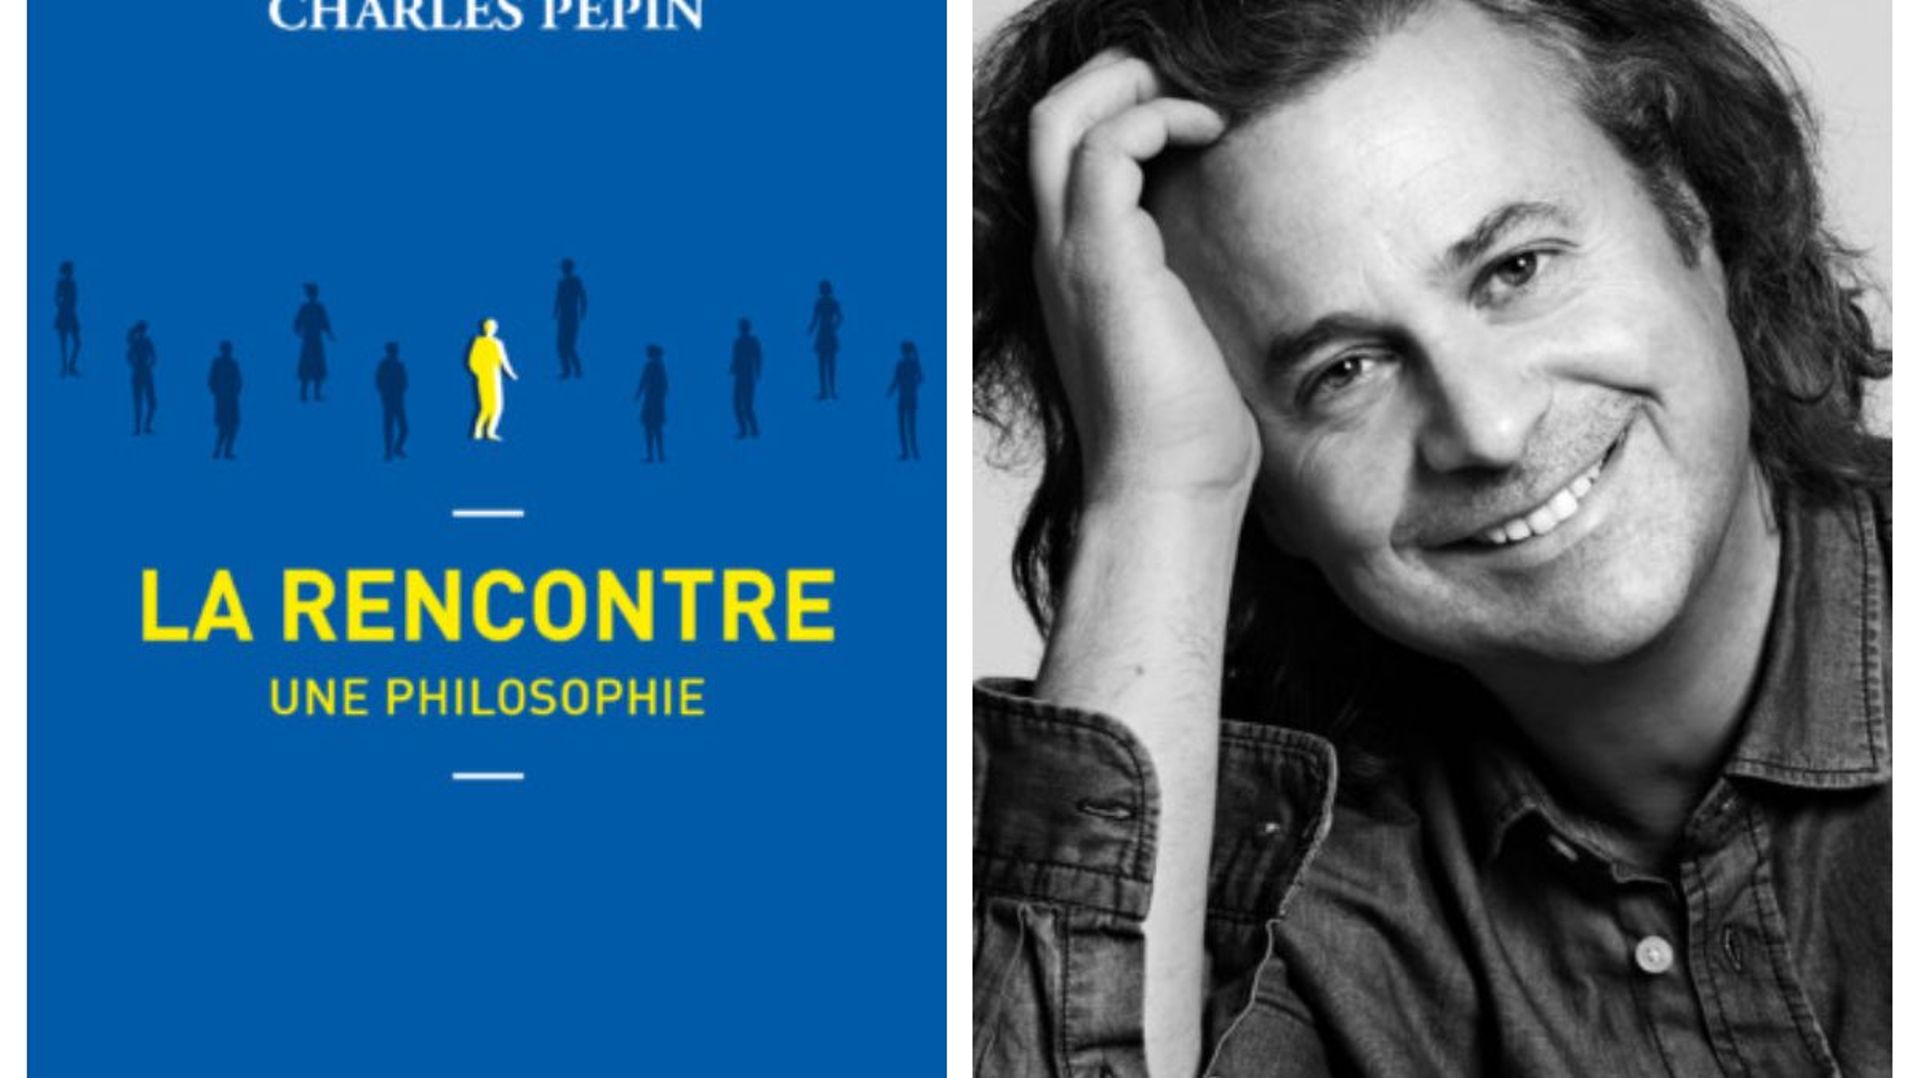 Invité: Charles Pépin pour La rencontre, une philosophie